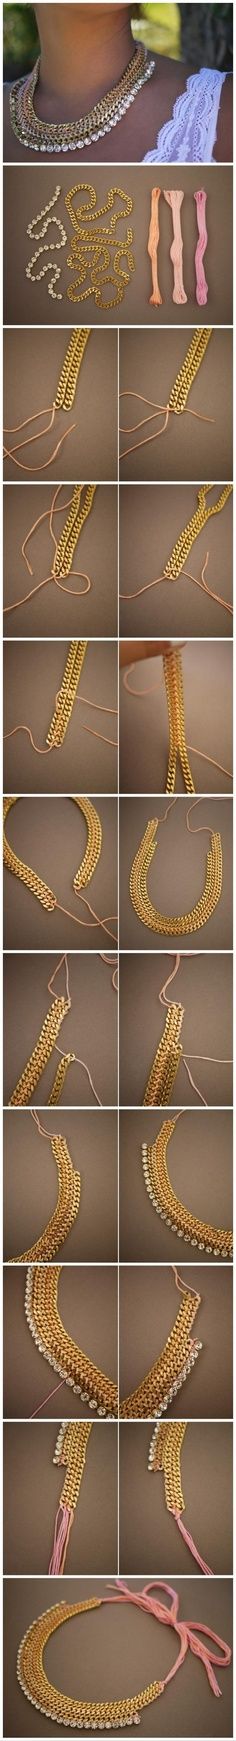 Les accessoires incontournables pour realiser des colliers DIY.